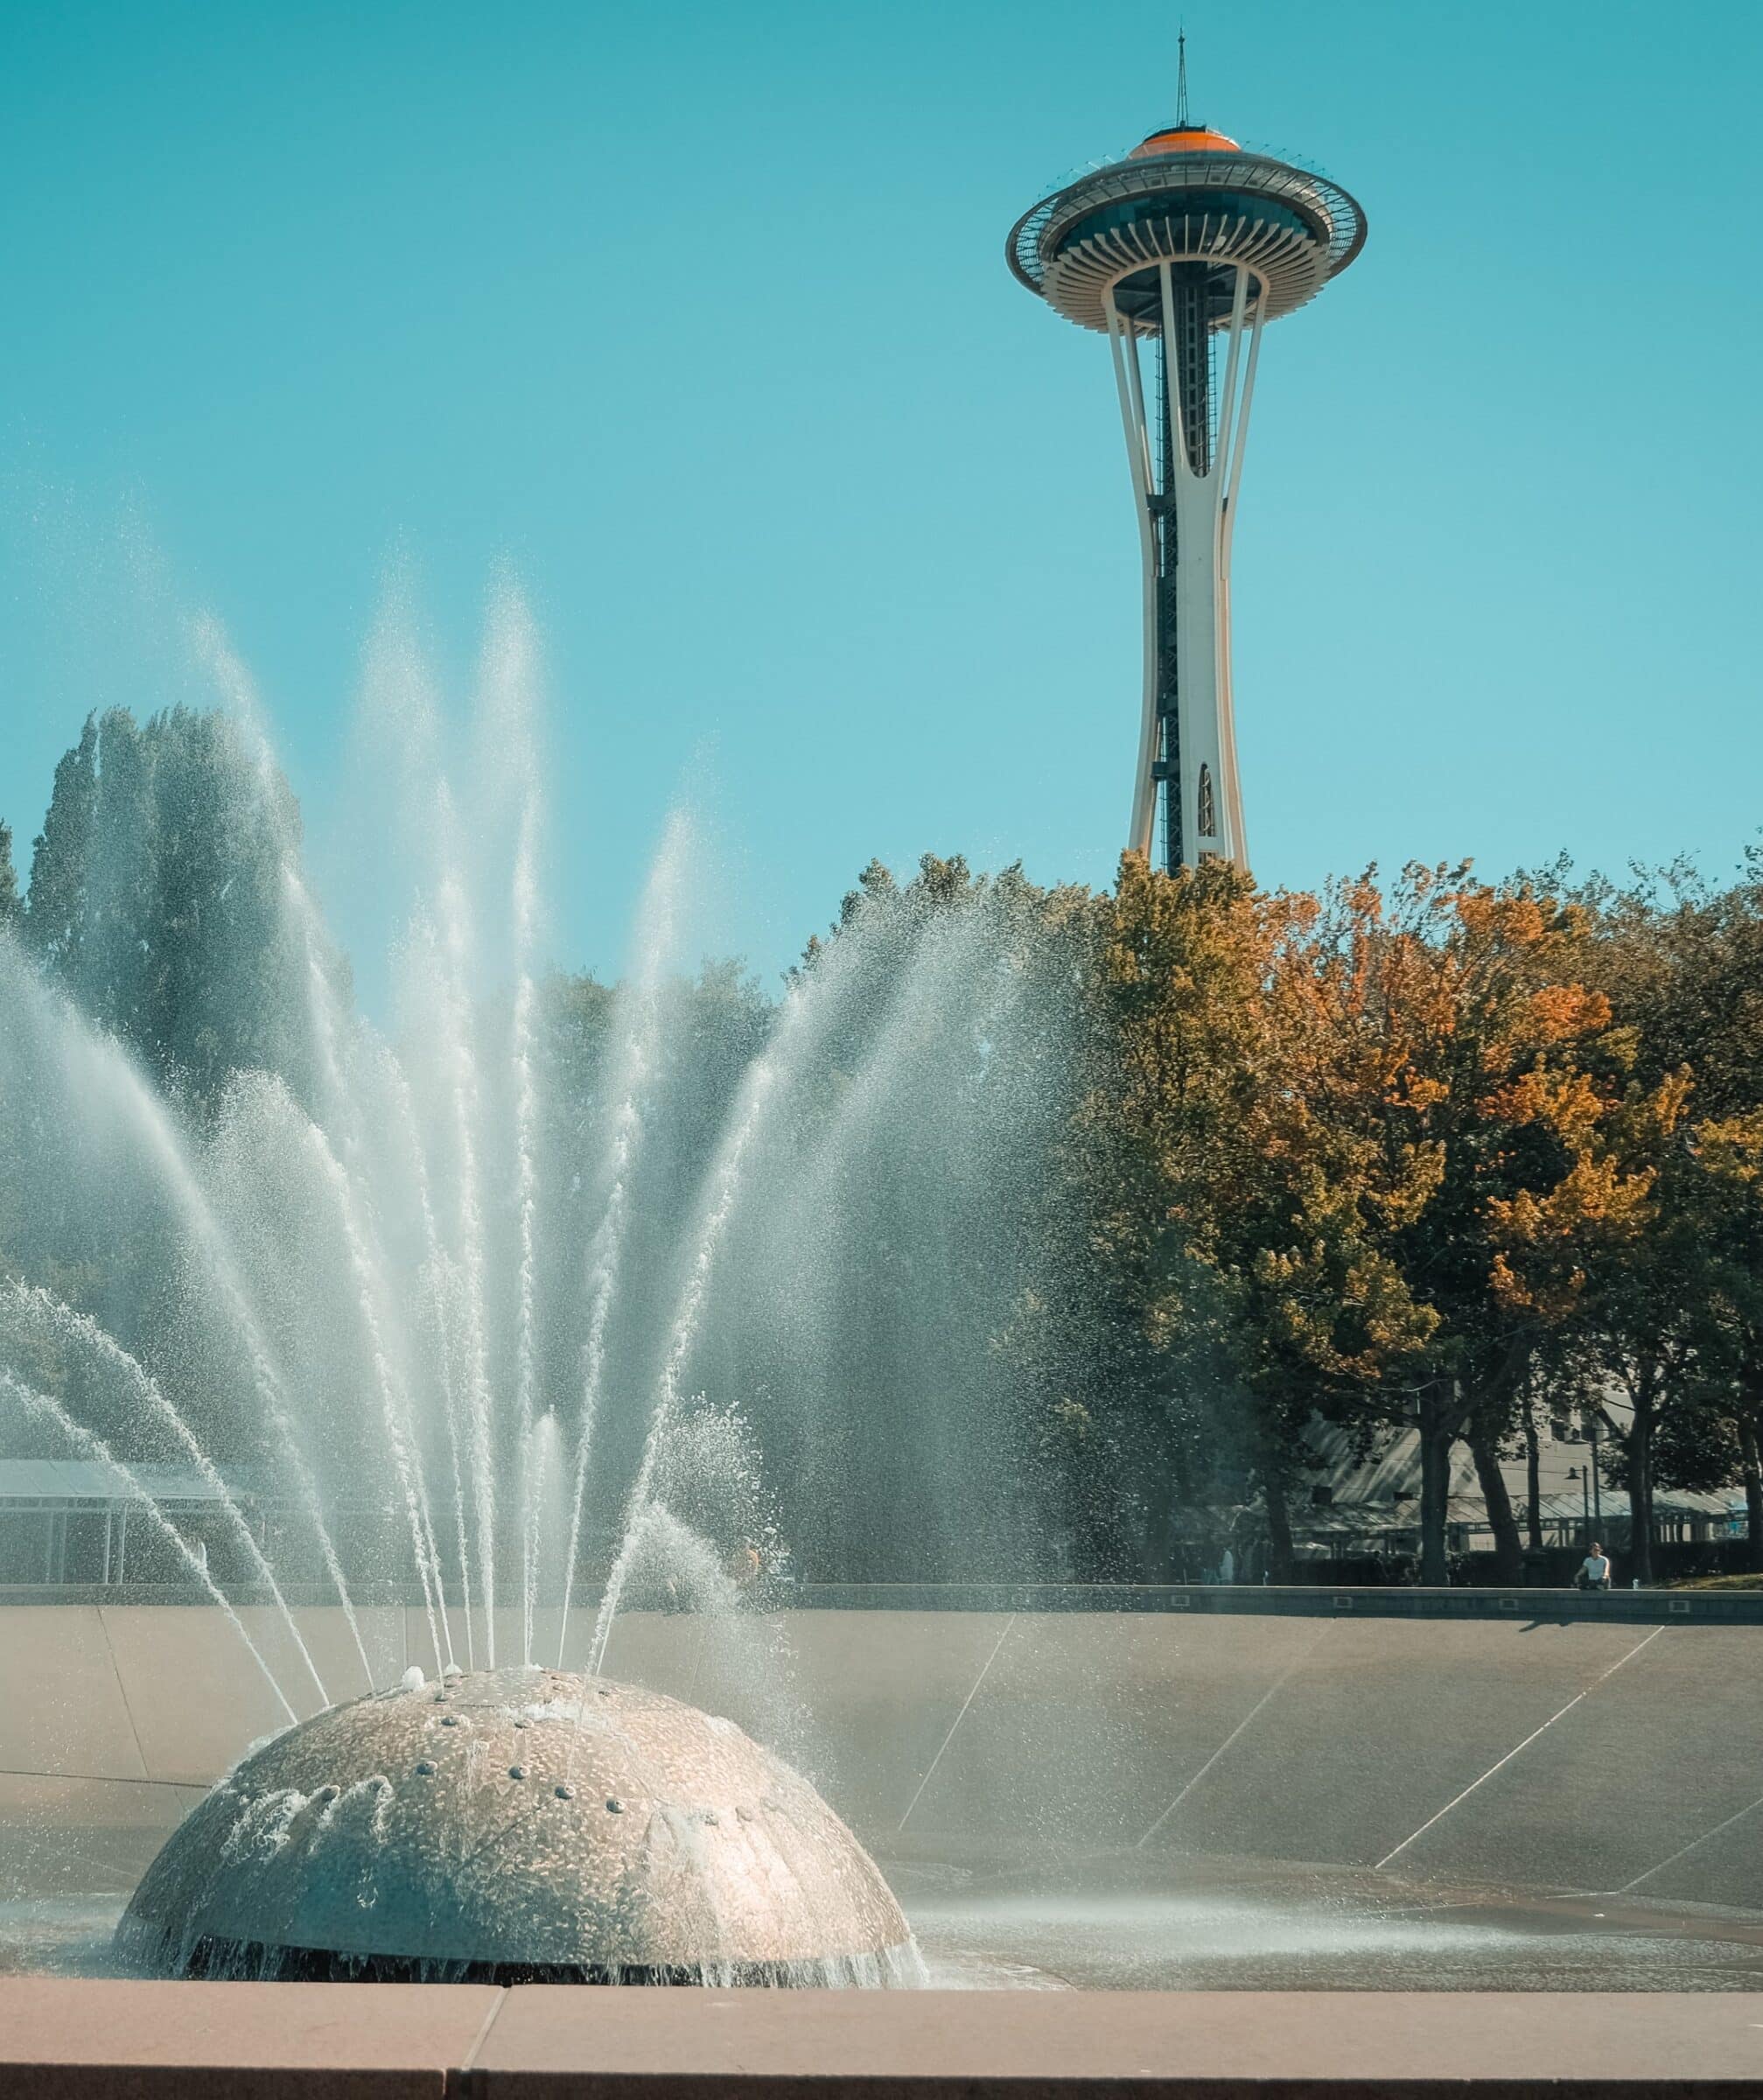 La aguja espacial | Consejos para Seattle